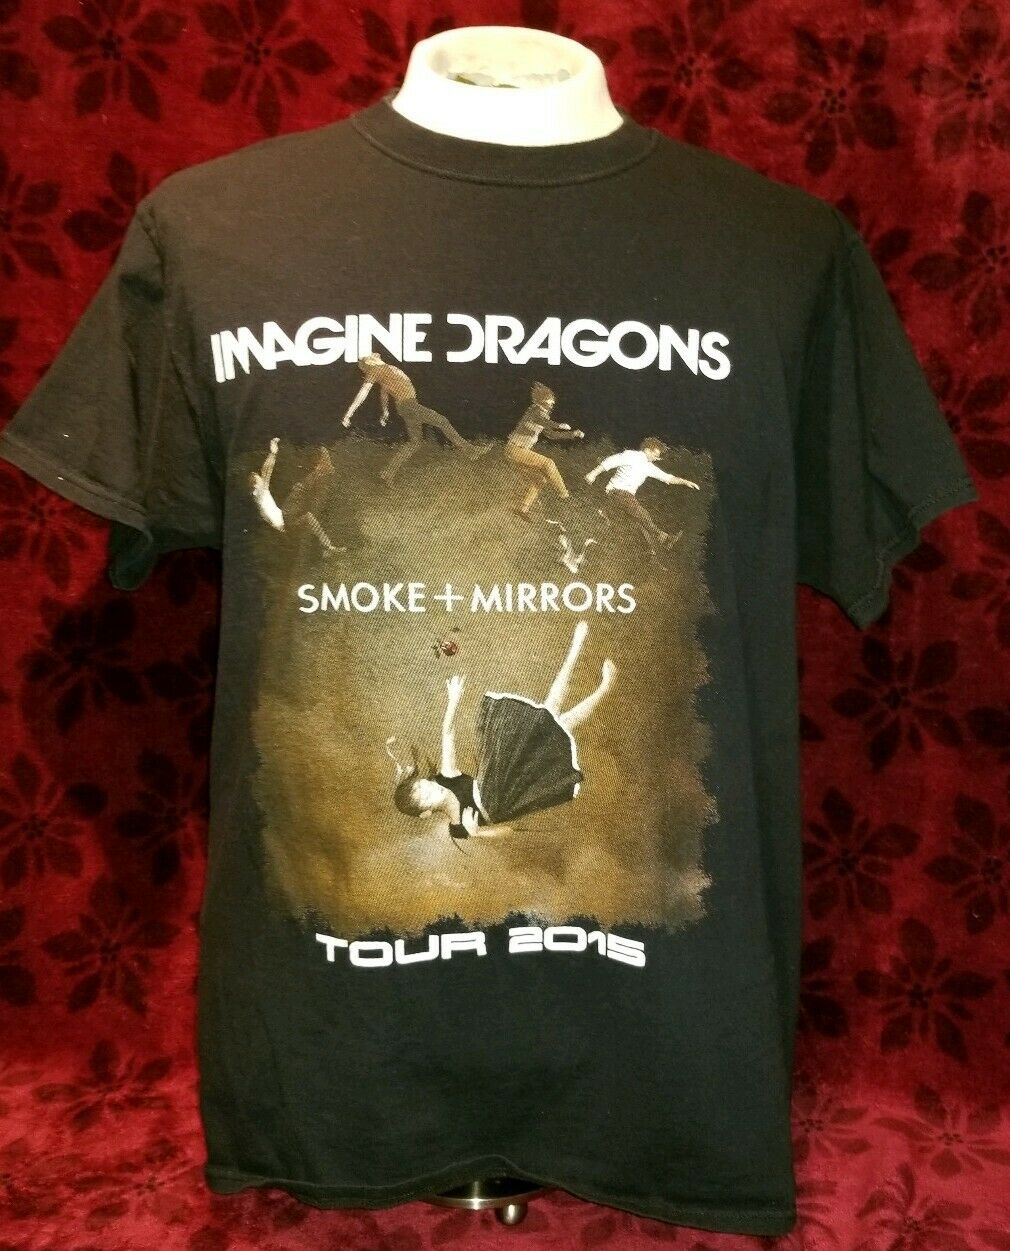 Nouveau Imagine Dragons Smoke Mirrors Rock Band Homme T-shirt noir taille S à 3XL 